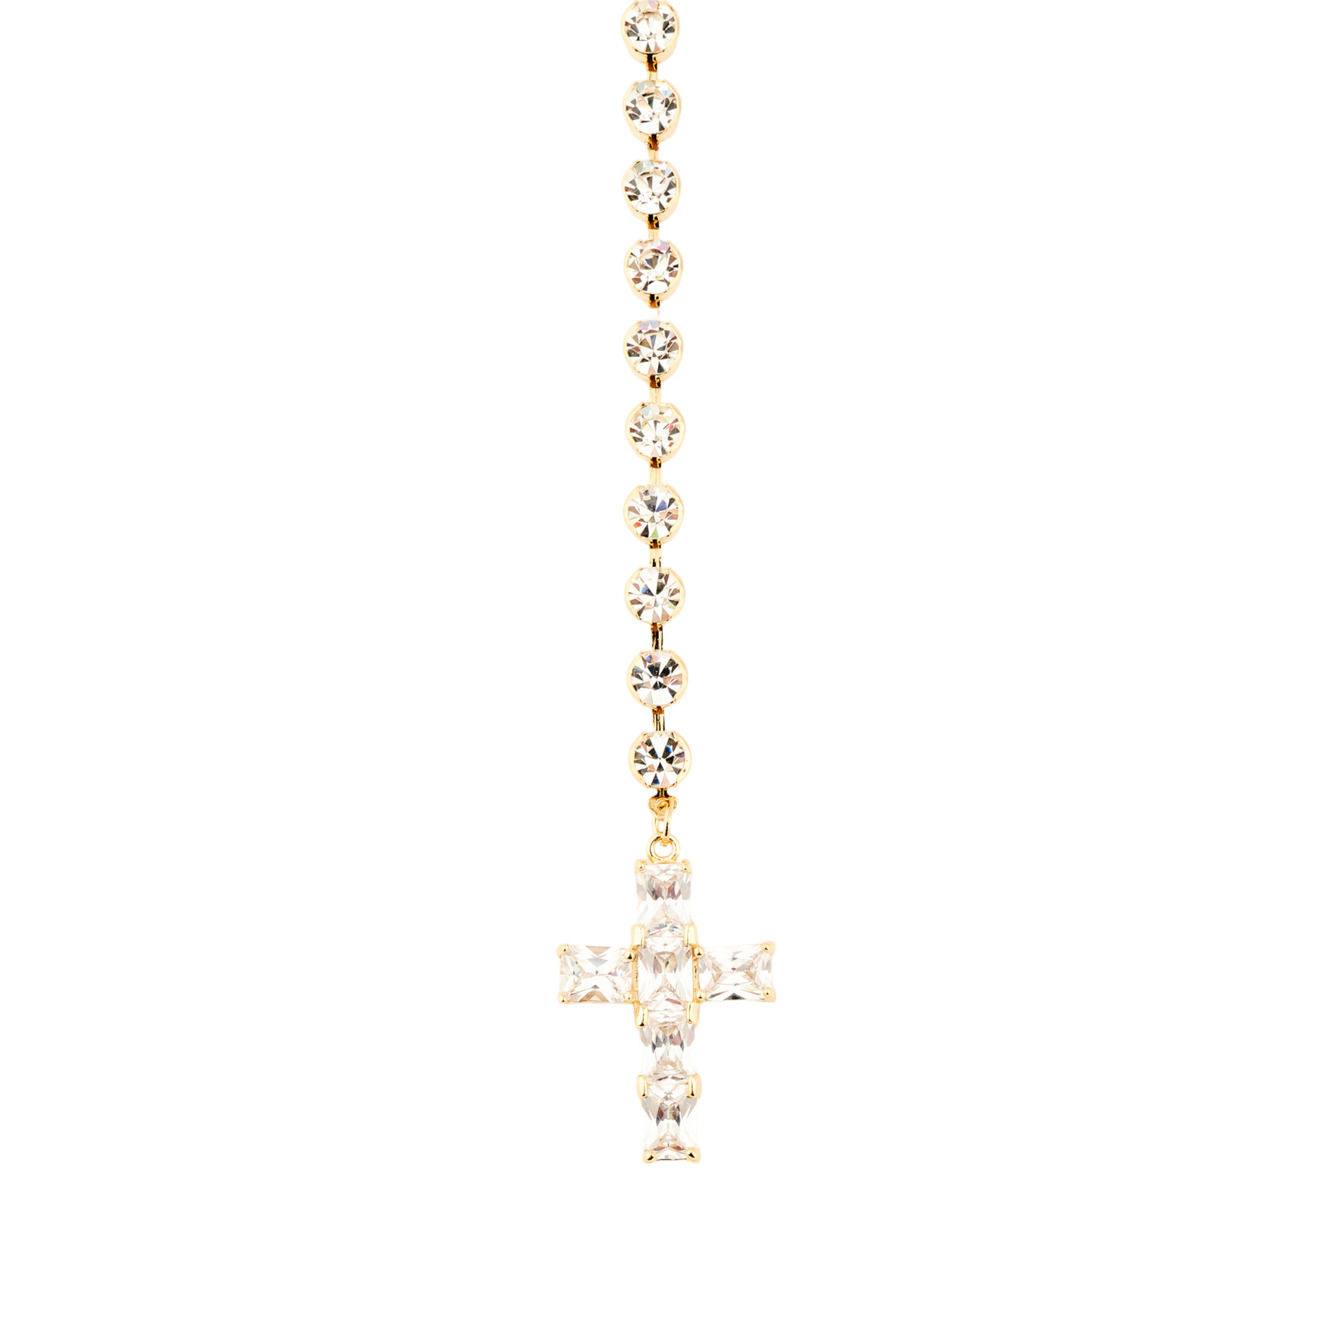 Herald Percy Золотистый сотуар с белыми кристаллами и подвеской крестом